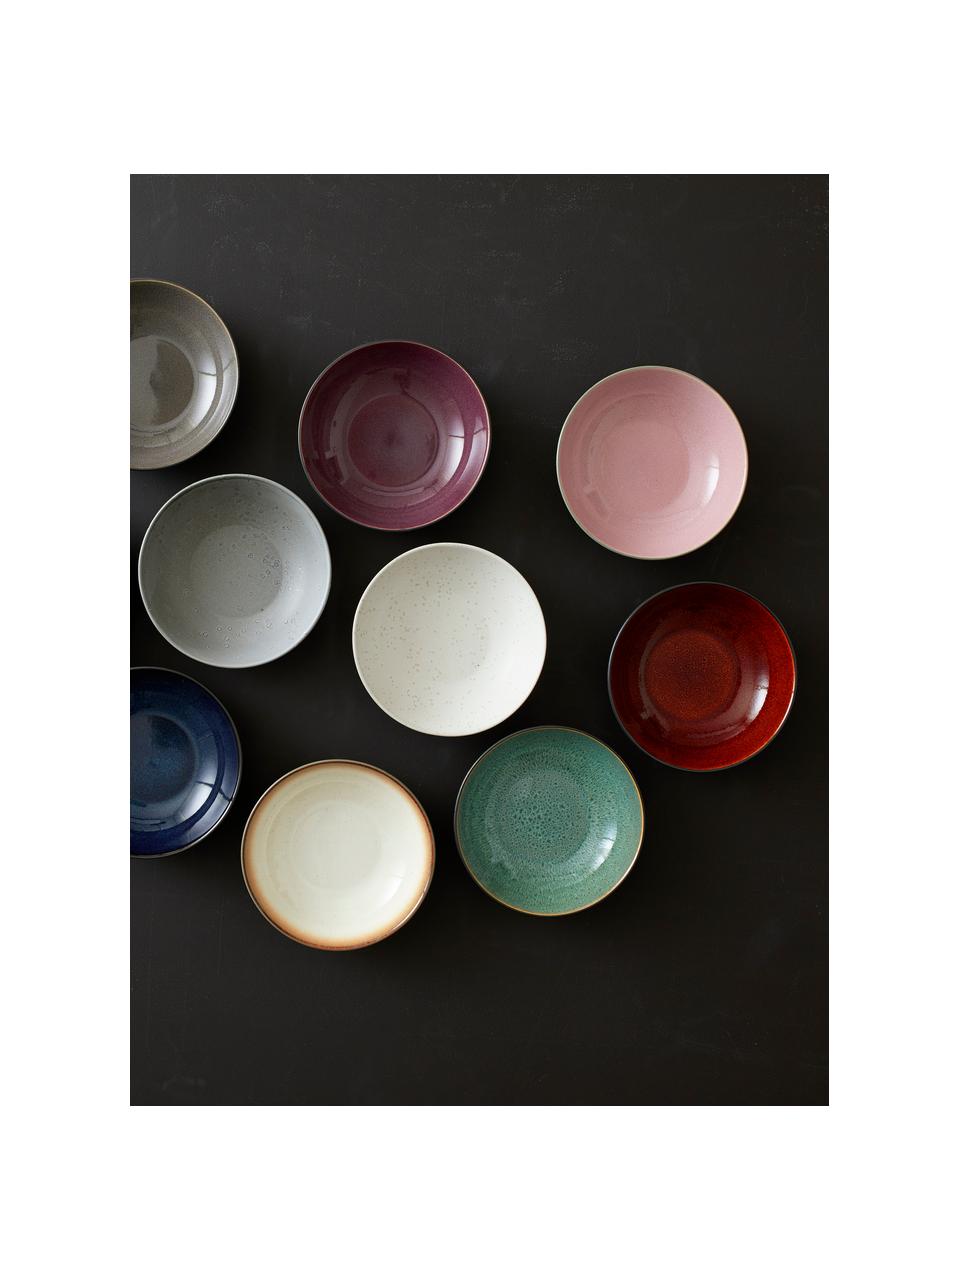 Soepbord Gastro van keramiek in zwart/groen, Ø 20 cm, 2 stuks, Keramiek, Zwart, groen, goudkleurig, Ø 20 x H 6 cm